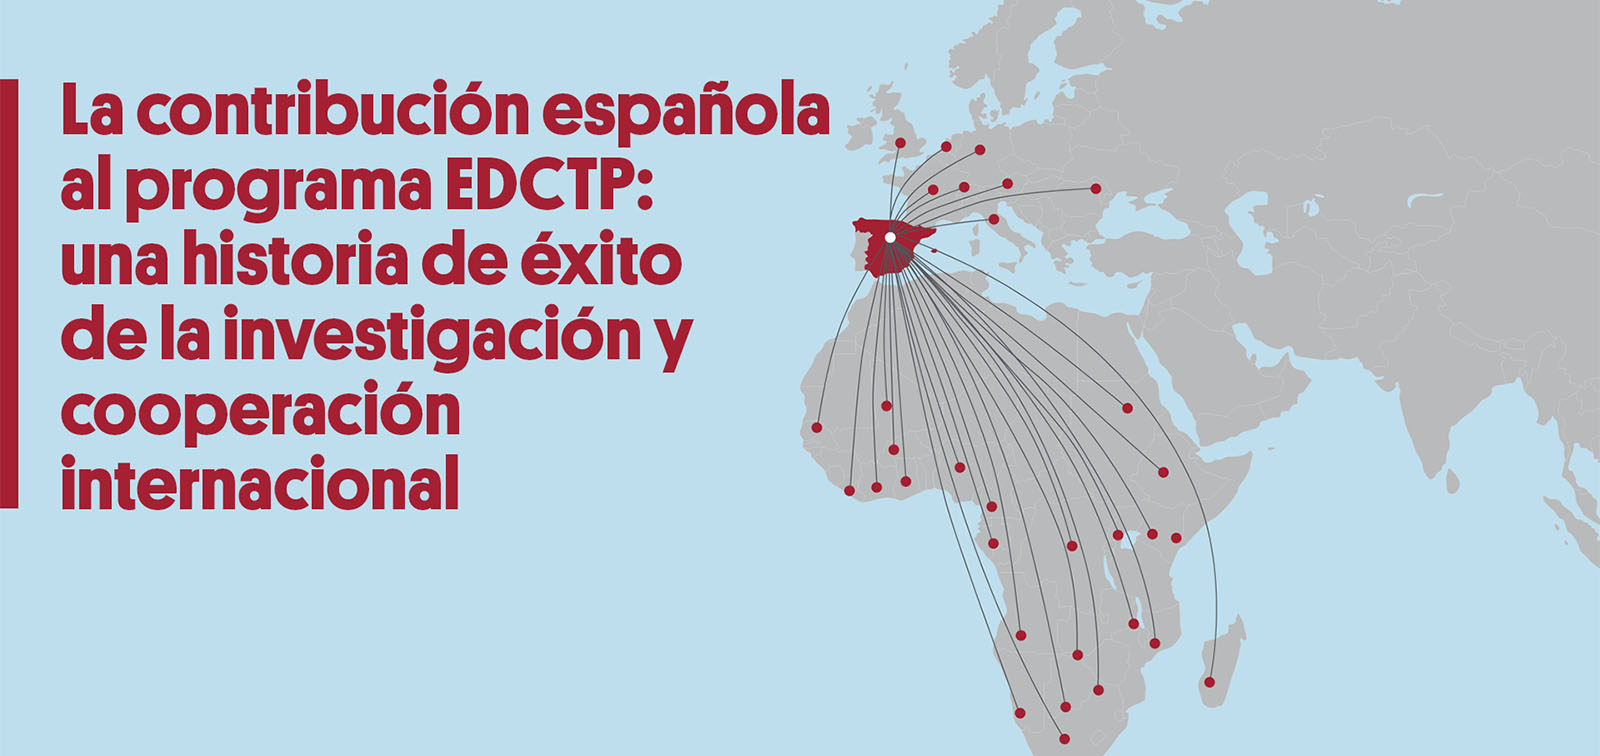 La contribución española al programa EDCTP